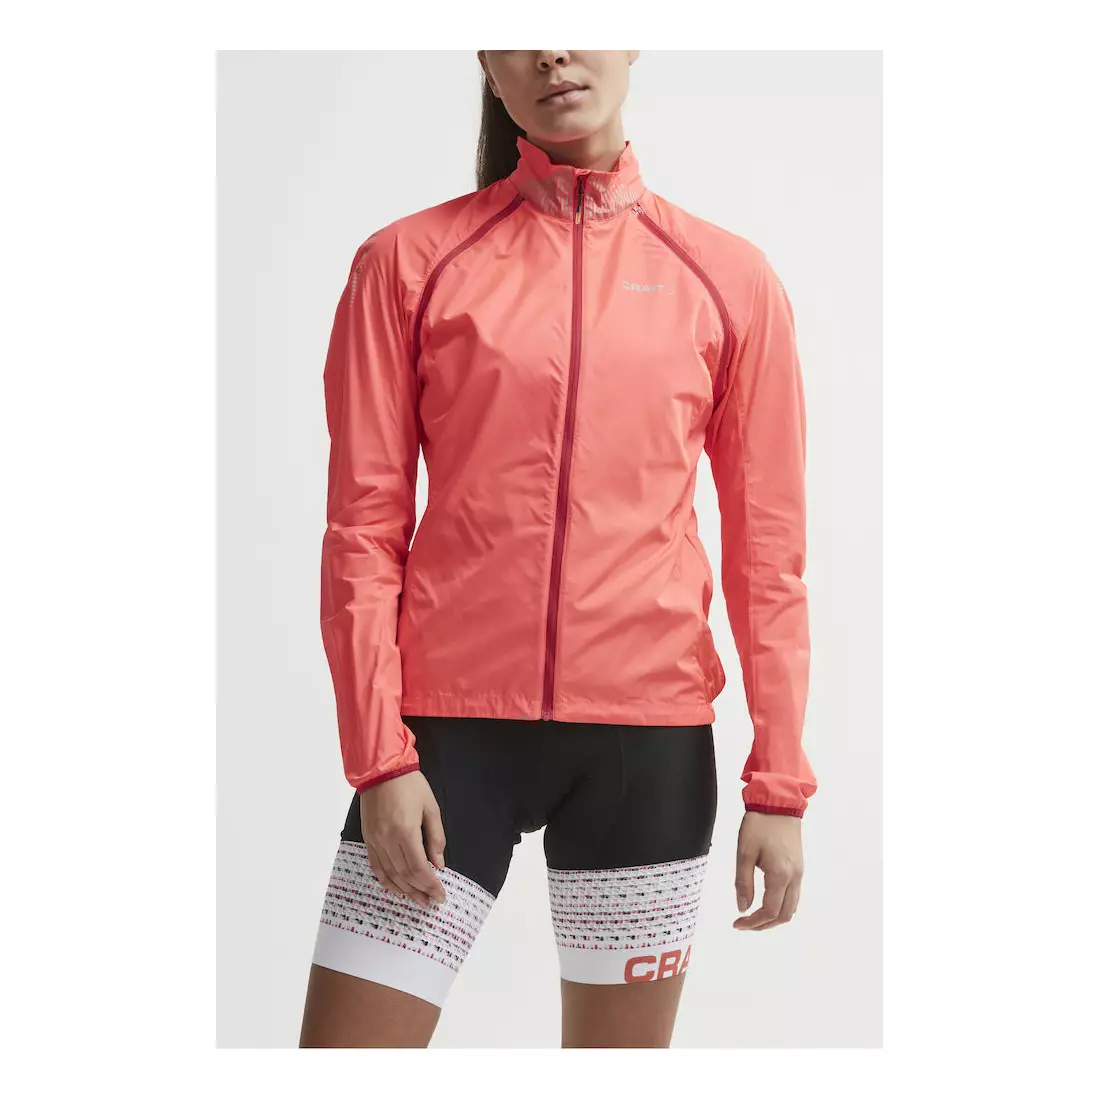 CRAFT VELO CONVERT dámská cyklistická bunda / vesta, větrovka fluor růžová 1905445